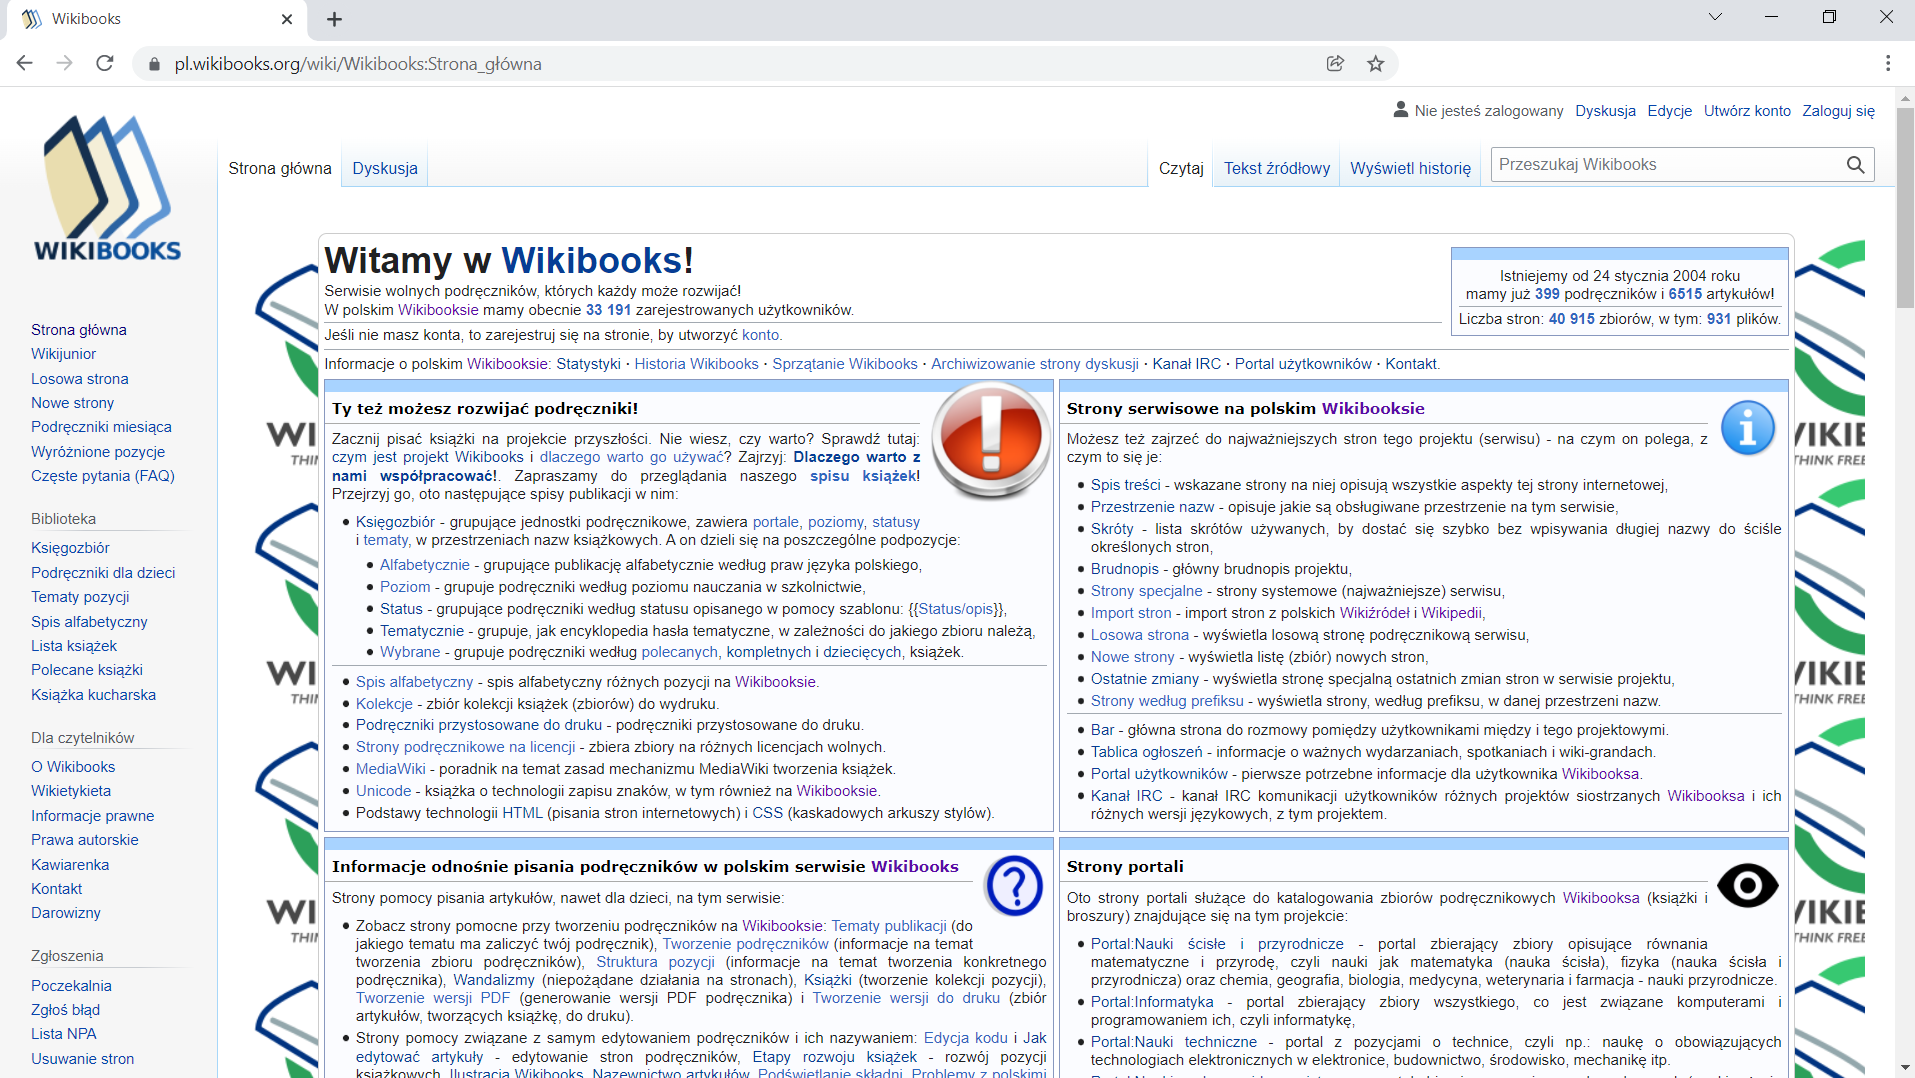 Zrzut okna strony pl.wikibooks.org. U góry znajdują się zakładki: "Strona Główna", "Dyskusja", "Czytaj", "Kod źródłowy", "Historia i autorzy" oraz okienko wyszukiwania. Po lewej pod logiem Wikibooks mieści się pasek z odnośnikami: "Strona główna", "Wikijunior", "Losowa strona", "Nowe strony", "Podręczniki miesiąca", "Wyróżnione pozycje", "Częste pytania", "(FAQ)", Biblioteka (sekcja), "Księgozbiór". "Podręczniki dla dzieci", "Tematy pozycji", "Spis alfabetyczny", "Lista książek", "Polecane książki", "Książka kucharska", Dla czytelników (sekcja), "O Wikibooks", "Wikietykieta", "Informacje prawne", "Prawa autorskie", "Kawiarenka", "Kontakt", "Darowizny", Zgłoszenia (sekcja), "Poczekalnia", "Zgłoś błąd", "Lista NPA, "Usuwanie stron".  Główna sekcja strony zawiera nagłówek "Witamy w Wikibooks!" i notatką "Serwisie wolnych podręczników, których każdy może rozwijać! W polskim Wikibooksie mamy obecnie 33 191 zarejestrowanych użytkowników.", "Jeśli nie masz konta, to zarejestruj się na stronie, by utworzyć konto", "Istniejemy od 24 stycznia 2004 roku mamy już 399 podręczniki i 6515 artykułów! Liczba stron: 40 915zbiory, w tym: 931 plików." Poniżej dostępne są odnośniki "Informacje o polskim Wikibooksie", "Statystyki", "Historia Wikibooks", "Sprzątanie Wikibooks", "Archiwizowanie strony dyskusji", "Kanał IRC", "Portal użytkowników", "Kontakt.". Poniżej dostępne są cztery sekcje z tekstem i odnośnikami. Pierwsza "Ty też możesz rozwijać podręczniki!" - "Zacznij pisać książki na projekcie przyszłości. Nie wiesz, czy warto? Sprawdź tutaj: czym jest projekt Wikibooks i dlaczego warto go używać? Zajrzyj: Dlaczego warto z nami współpracować!. Zapraszamy do przeglądania naszego spisu książek! Przejrzyj go, oto następujące spisy publikacji w nim: Księgozbiór - grupujące jednostki podręcznikowe, zawiera portale, poziomy, statusy i tematy, w przestrzeniach nazw książkowych. A on dzieli się na poszczególne podpozycje: Alfabetycznie - grupujące publikację alfabetycznie według praw języka polskiego, Poziom - grupuje podręczniki według poziomu nauczania w szkolnictwie, Status - grupujące podręczniki według statusu opisanego w pomocy szablonu:{{Status/opis}}, Tematycznie - grupuje, jak encyklopedia hasła tematyczne, w zależności do jakiego zbioru należą, Wybrane - grupuje podręczniki według polecanych, kompletnych i dziecięcych, książek. Spis alfabetyczny - spis alfabetyczny różnych pozycji na Wikibooksie. Kolekcje - zbiór kolekcji książek (zbiorów) do wydruku. Podręczniki przystosowane do druku - podręczniki przystosowane do druku. Strony podręcznikowe na licencji - zbiera zbiory na różnych licencjach wolnych. MediaWiki - poradnik na temat zasad mechanizmu MediaWiki tworzenia książek. Unicode - książka o technologii zapisu znaków, w tym również na Wikibooksie. Podstawy technologii HTML (pisania stron internetowych) i CSS (kaskadowych arkuszy stylów).". Druga "Strony serwisowe na polskim Wikibooksie" - "Możesz też zajrzeć do najważniejszych stron tego projektu (serwisu) - na czym on polega, z czym to się je: Spis treści - wskazane strony na niej opisują wszystkie aspekty tej strony internetowej, Przestrzenie nazw - opisuje jakie są obsługiwane przestrzenie na tym serwisie, Skróty - lista skrótów używanych, by dostać się szybko bez wpisywania długiej nazwy do ściśle określonych stron, Brudnopis - główny brudnopis projektu, Strony specjalne - strony systemowe (najważniejsze) serwisu, Import stron - import stron z polskich Wikiźródeł i Wikipedii, Losowa strona - wyświetla losową stronę podręcznikową serwisu, Nowe strony - wyświetla listę (zbiór) nowych stron, Ostatnie zmiany - wyświetla stronę specjalną ostatnich zmian stron w serwisie projektu, Strony według prefiksu - wyświetla strony, według prefiksu, w danej przestrzeni nazw. Bar - główna strona do rozmowy pomiędzy użytkownikami między i tego projektowymi. Tablica ogłoszeń - informacje o ważnych wydarzaniach, spotkaniach i wiki‑grandach. Portal użytkowników - pierwsze potrzebne informacje dla użytkownika Wikibooksa. Kanał IRC - kanał IRC komunikacji użytkowników różnych projektów siostrzanych Wikibooksa i ich różnych wersji językowych, z tym projektem." Trzecia "Informacje odnośnie pisania podręczników w polskim serwisie Wikibooks" - "Strony pomocy pisania artykułów, nawet dla dzieci, na tym serwisie: Zobacz strony pomocne przy tworzeniu podręczników na Wikibooksie: Tematy publikacji (do jakiego tematu ma zaliczyć twój podręcznik), Tworzenie podręczników (informacje na temat tworzenia zbioru podręczników), Struktura pozycji (informacje na temat tworzenia konkretnego podręcznika), Wandalizmy (niepożądane działania na stronach), Książki (tworzenie kolekcji pozycji), Tworzenie wersji PDF (generowanie wersji PDF podręcznika) i Tworzenie wersji do druku (zbiór artykułów, tworzących książkę, do druku). Strony pomocy związane z samym edytowaniem podręczników i ich nazywaniem: Edycja kodu i Jak edytować artykuły - edytowanie stron podręczników, Etapy rozwoju książek - rozwój pozycji książkowych, Ilustracja Wikibooks, Nazewnictwo artykułów, Podświetlanie składni, Problemy z polskimi znakami i Quiz (strony związany z polami do wyboru w różnych testach) - budowa artykułów podręczników." Czwarta "Strony portali" - "Oto strony portali służące do katalogowania zbiorów podręcznikowych Wikibooksa (książki i broszury) znajdujące się na tym projekcie: Portal:Nauki ścisłe i przyrodnicze - portal zbierający zbiory opisujące równania matematyczne i przyrodę, czyli nauki jak matematyka (nauka ścisła), fizyka (nauka ścisła i przyrodnicza) oraz chemia, geografia, biologia, medycyna, weterynaria i farmacja - nauki przyrodnicze. Portal:Informatyka - portal zbierający zbiory wszystkiego, co jest związane komputerami i programowaniem ich, czyli informatykę, Portal:Nauki techniczne - portal z pozycjami o technice, czyli np.: naukę o obowiązujących technologiach elektronicznych w elektronice, budownictwo, środowisko, mechanikę itp.".